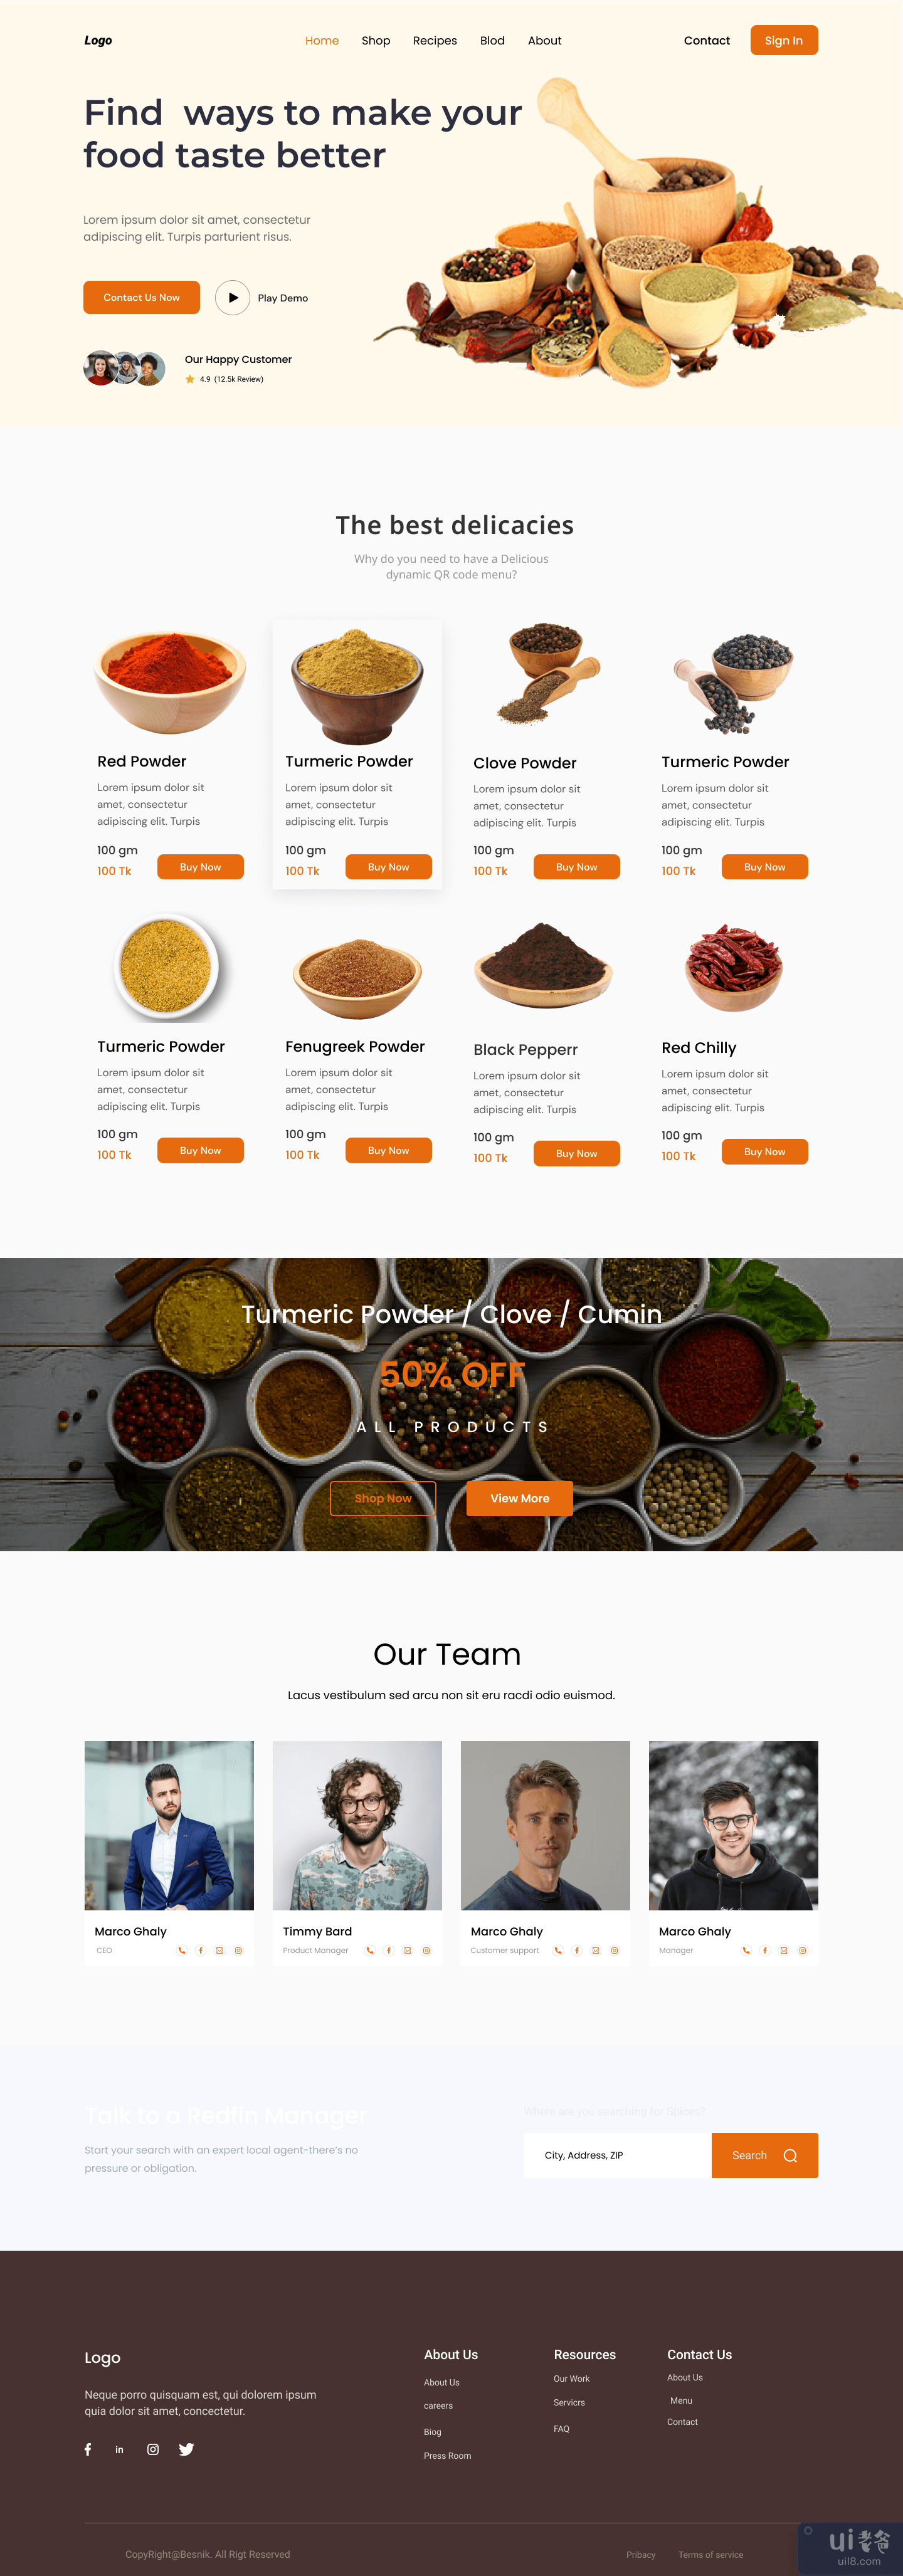 香料网站 - 概念设计(Spices Website - Concept Design)插图